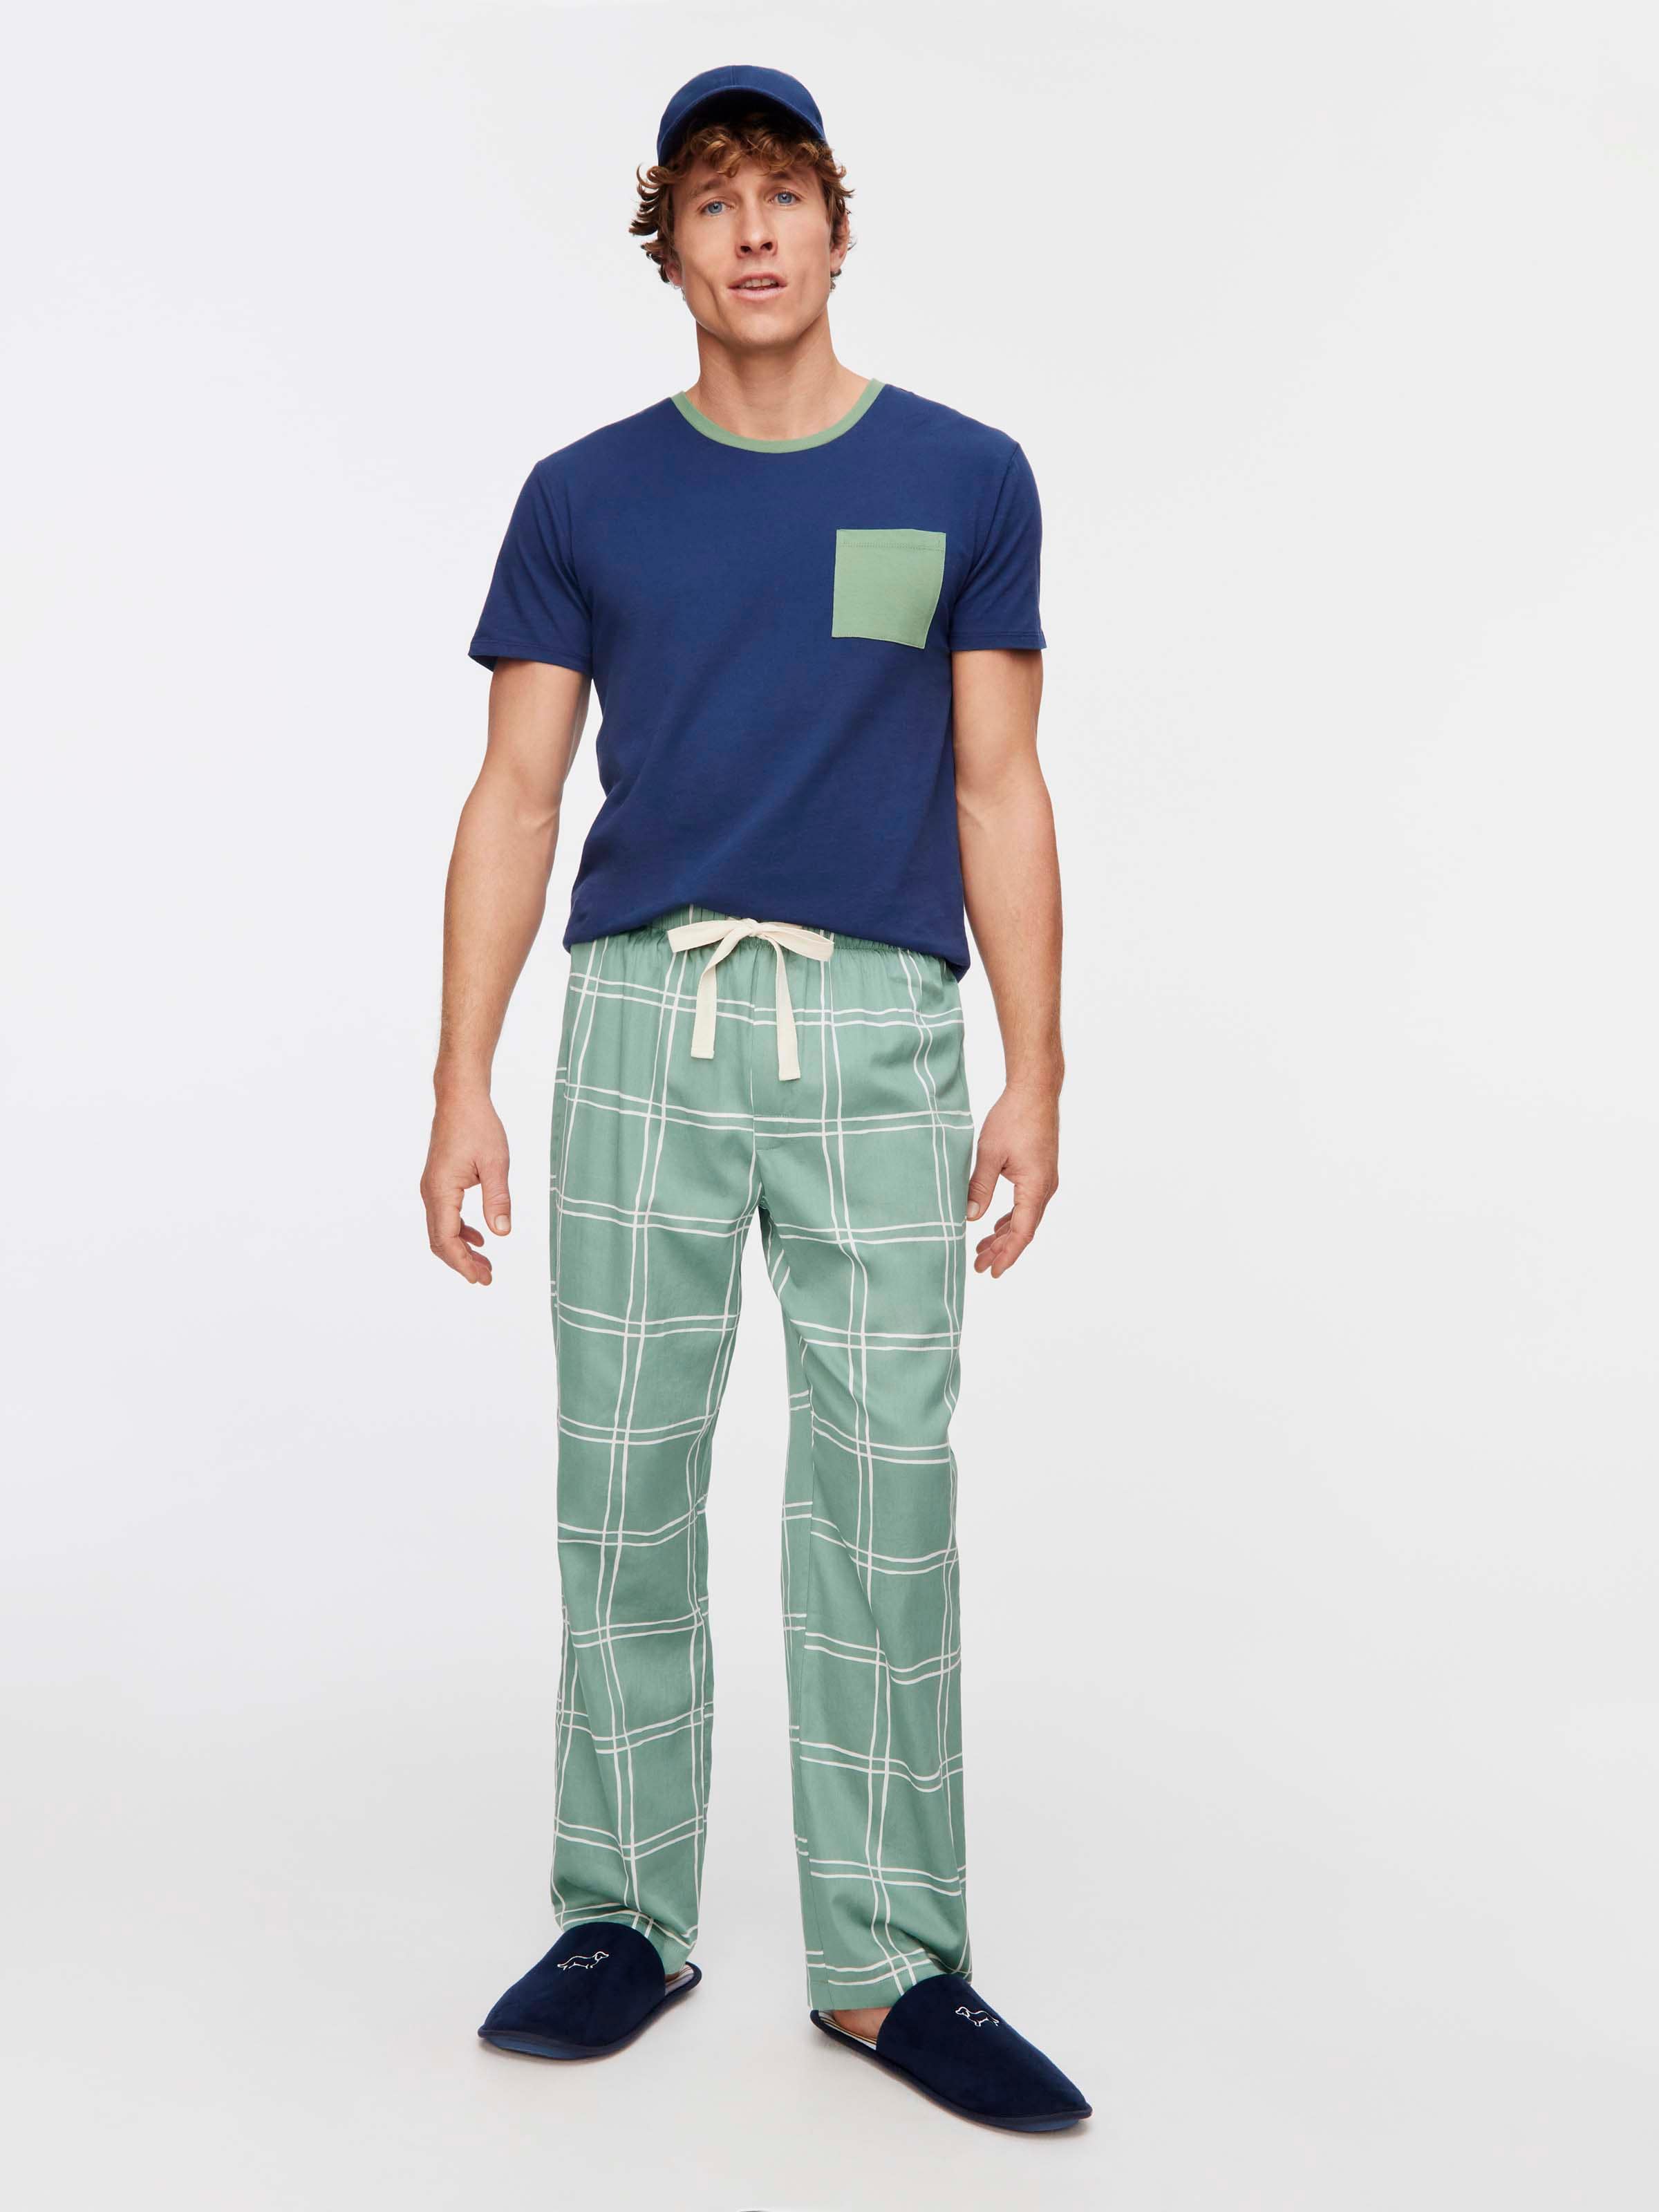 Men's Pyjama Pants - Sleep Pants for Men